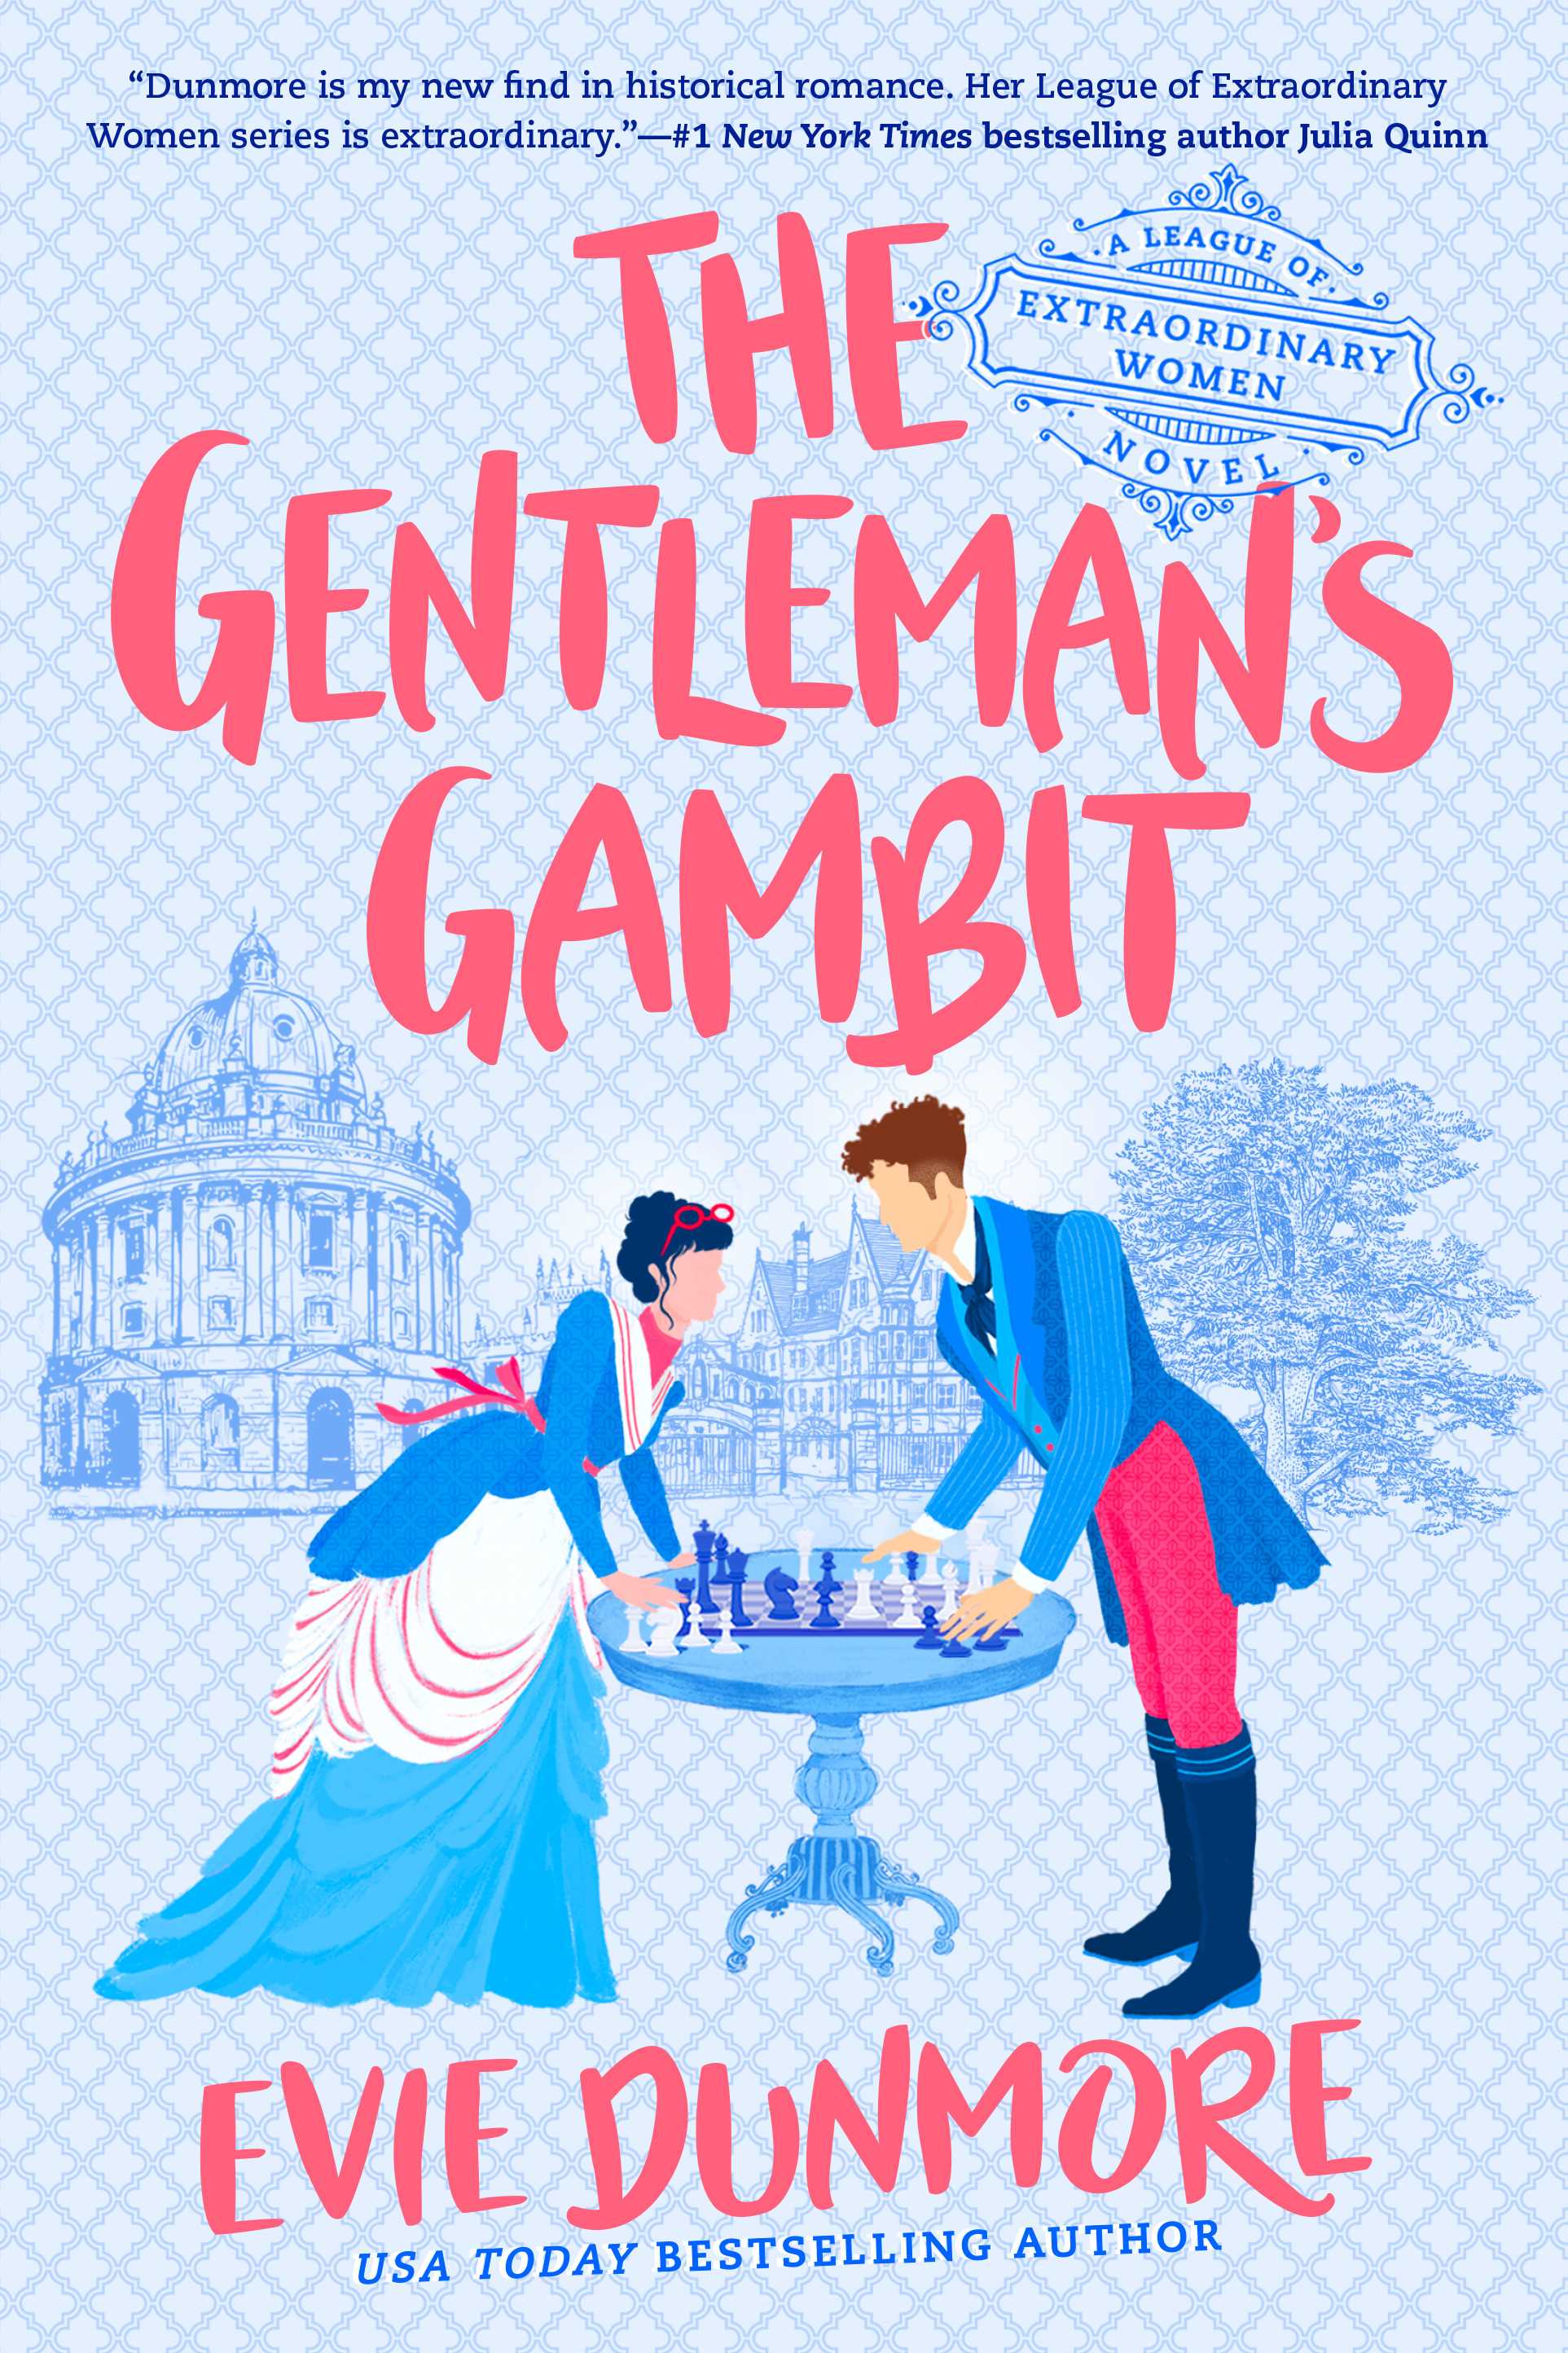 League of Extraordinary Women #04: The Gentleman's Gambit